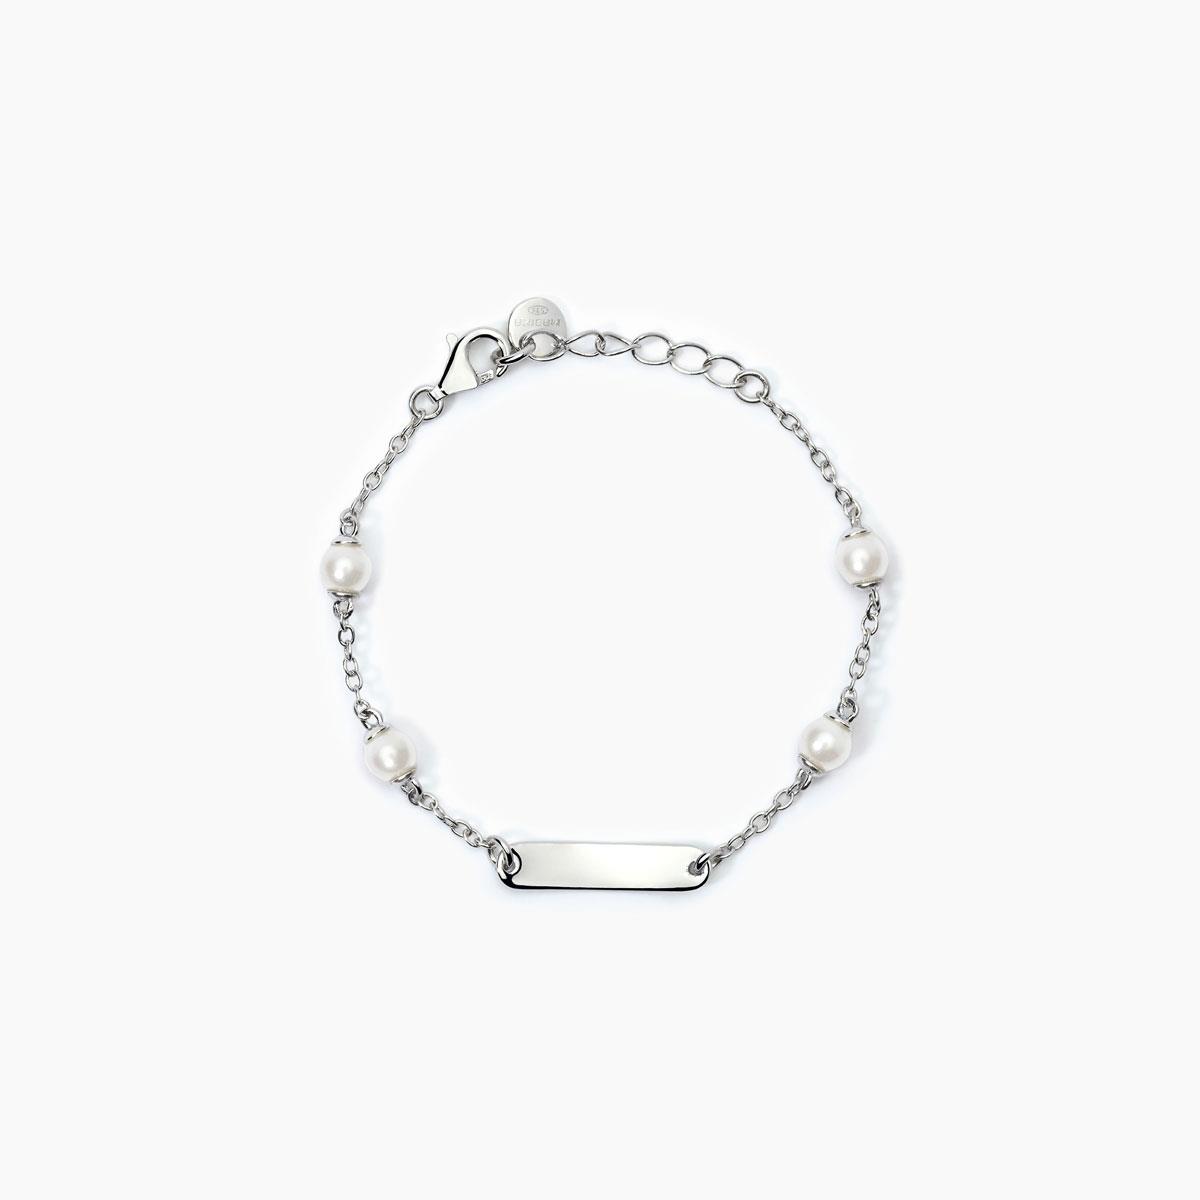 Gioielli linea bambino - Bracciale in argento perle conchiglia Ref. 533784 - MABINA